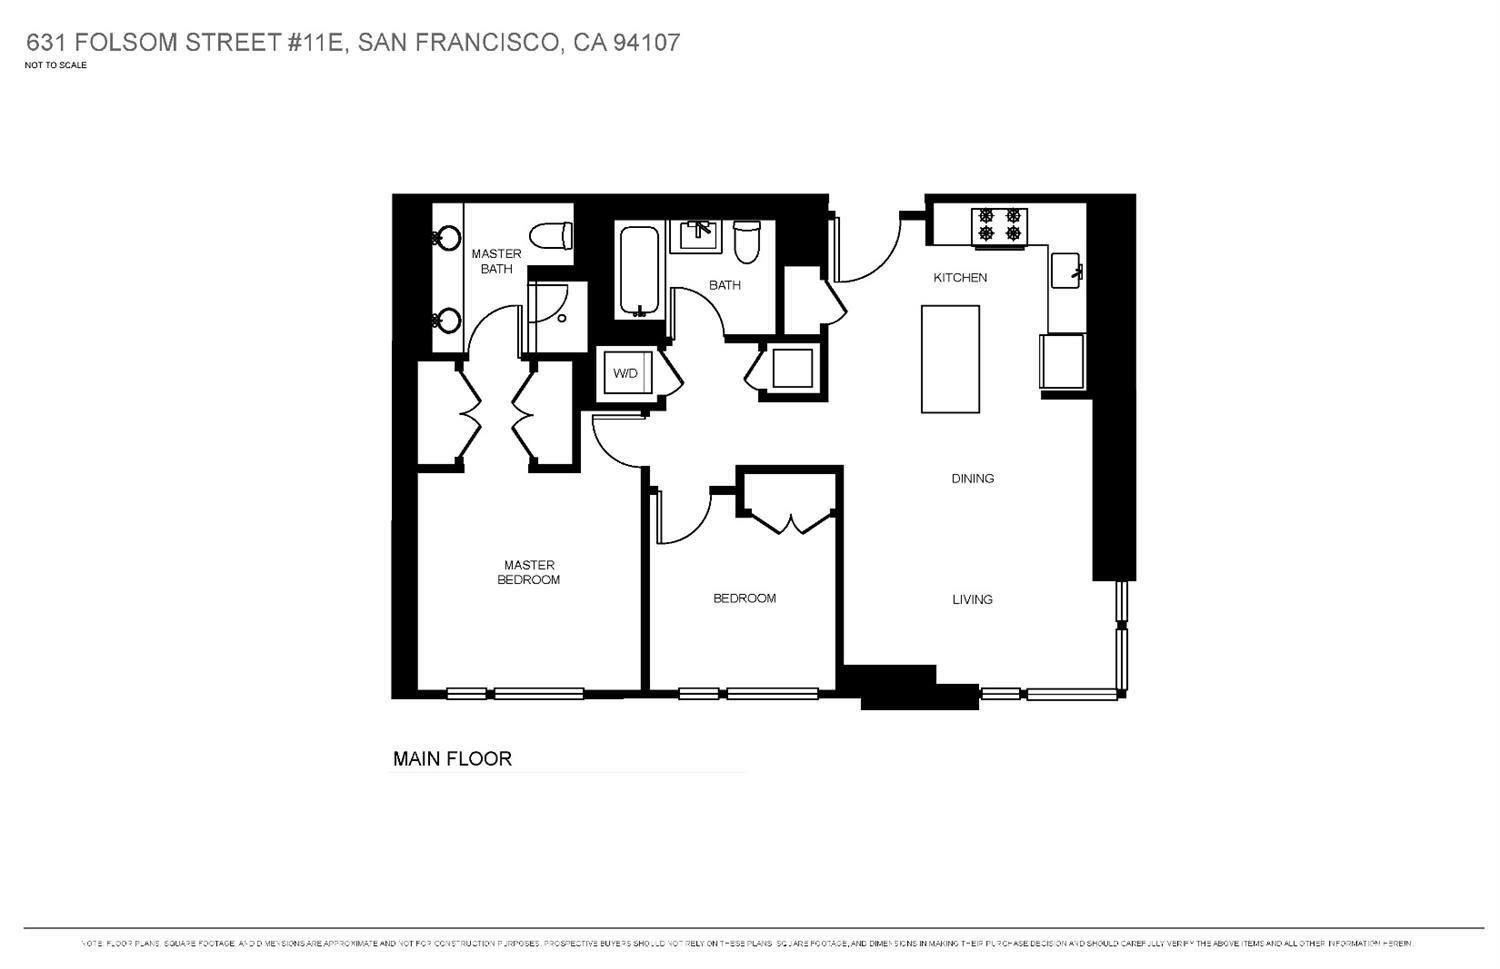 631 Folsom Street #11E floor plan